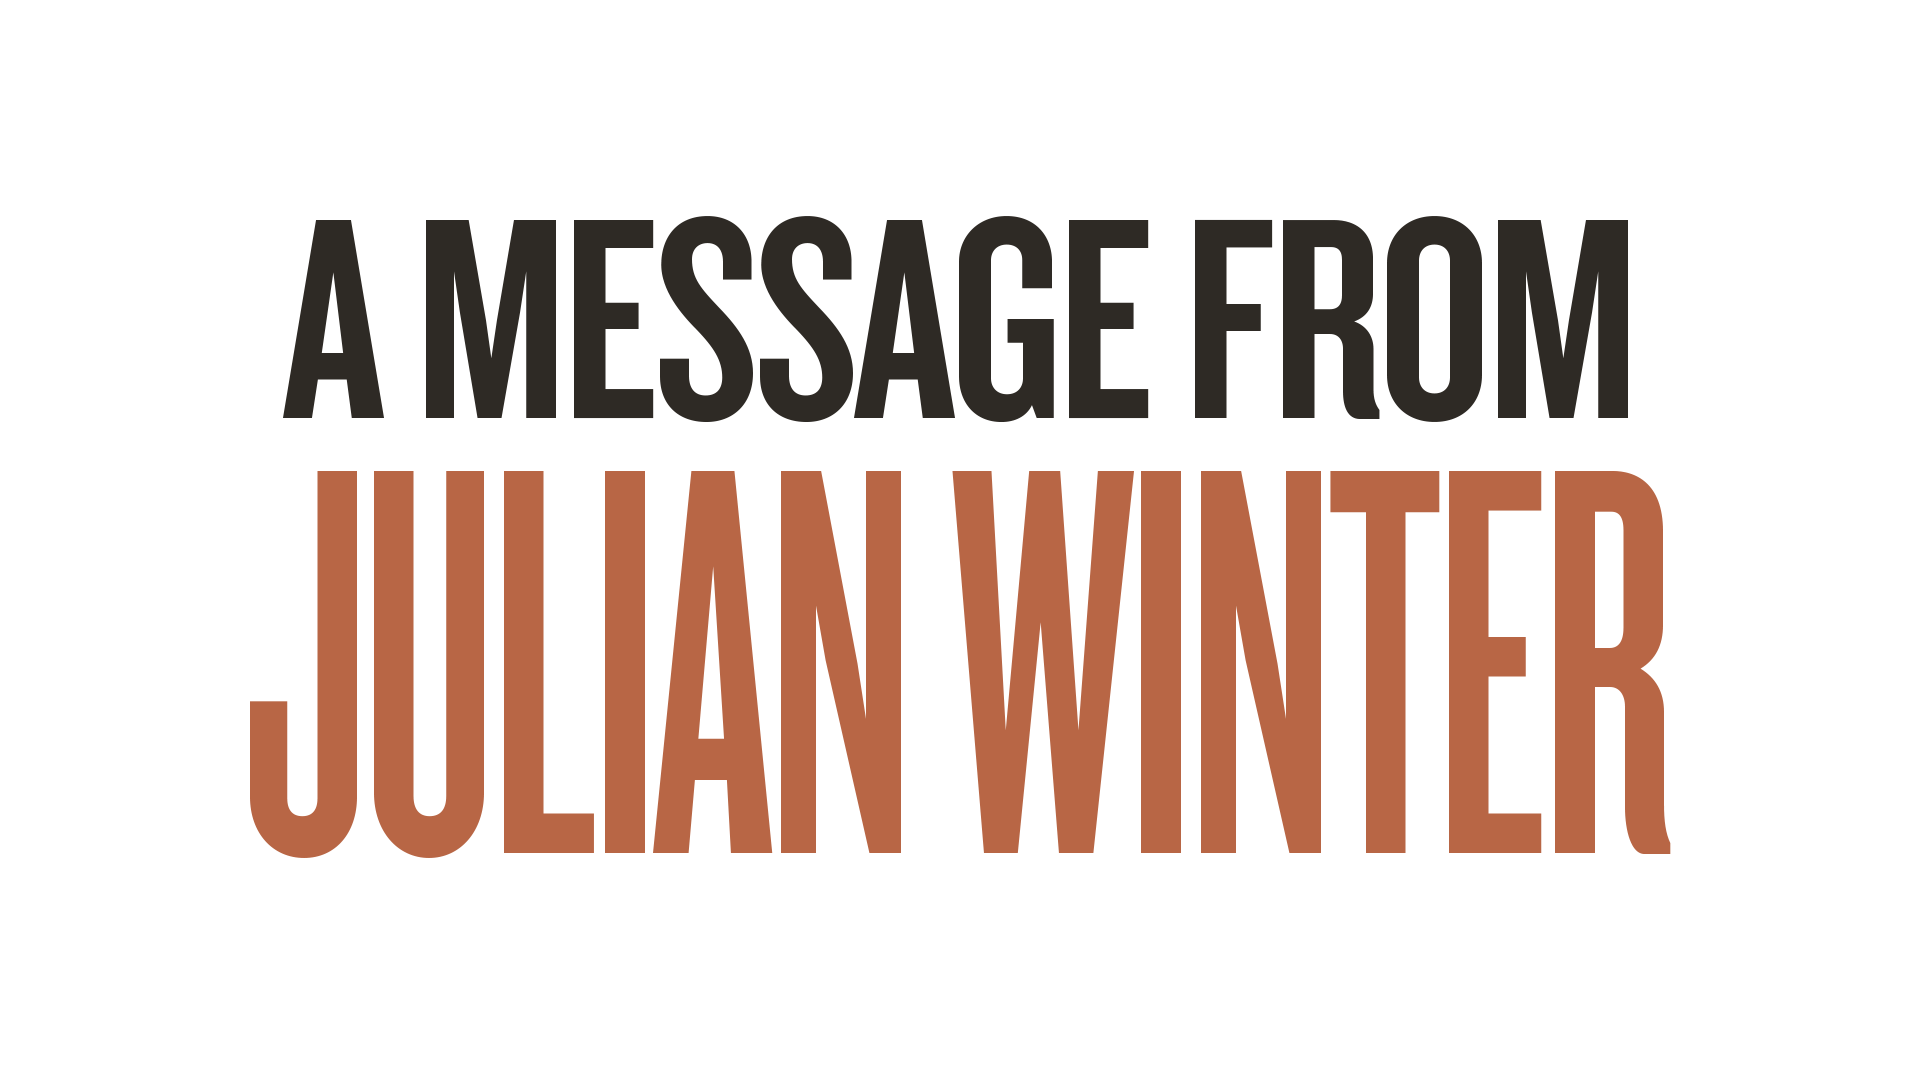 Julian Winters Notes